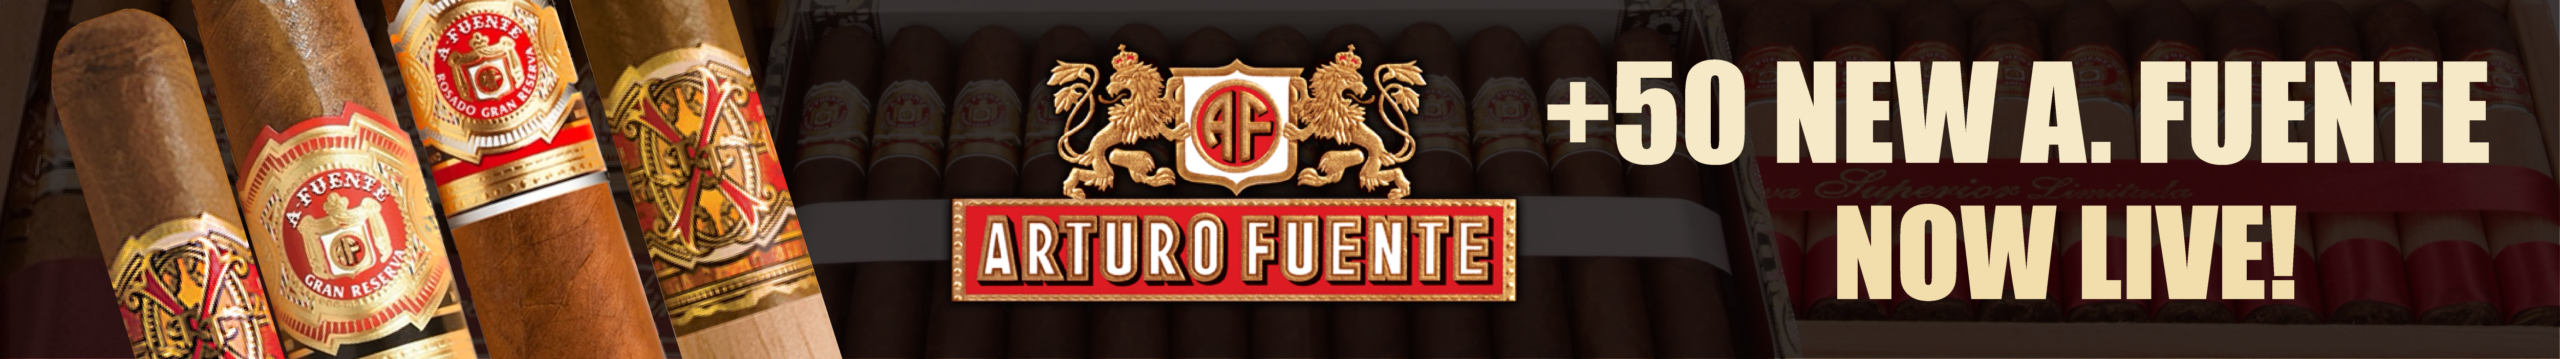 Buy Arturo Fuente Cigars Online